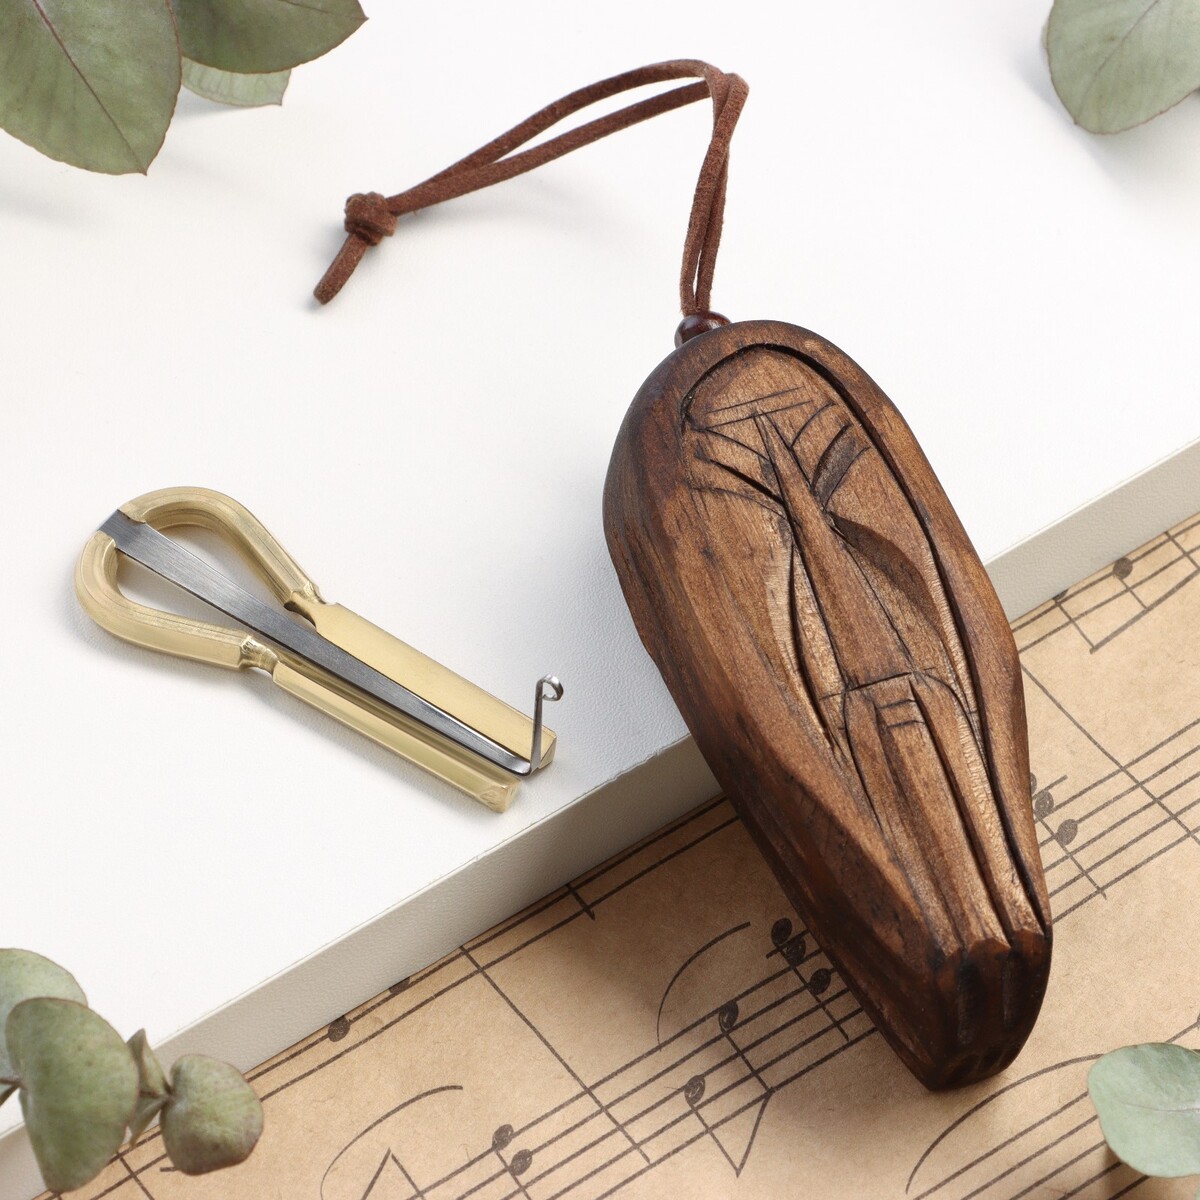 Музыкальный инструмент варган, алтайский, средний в футляре Music Life